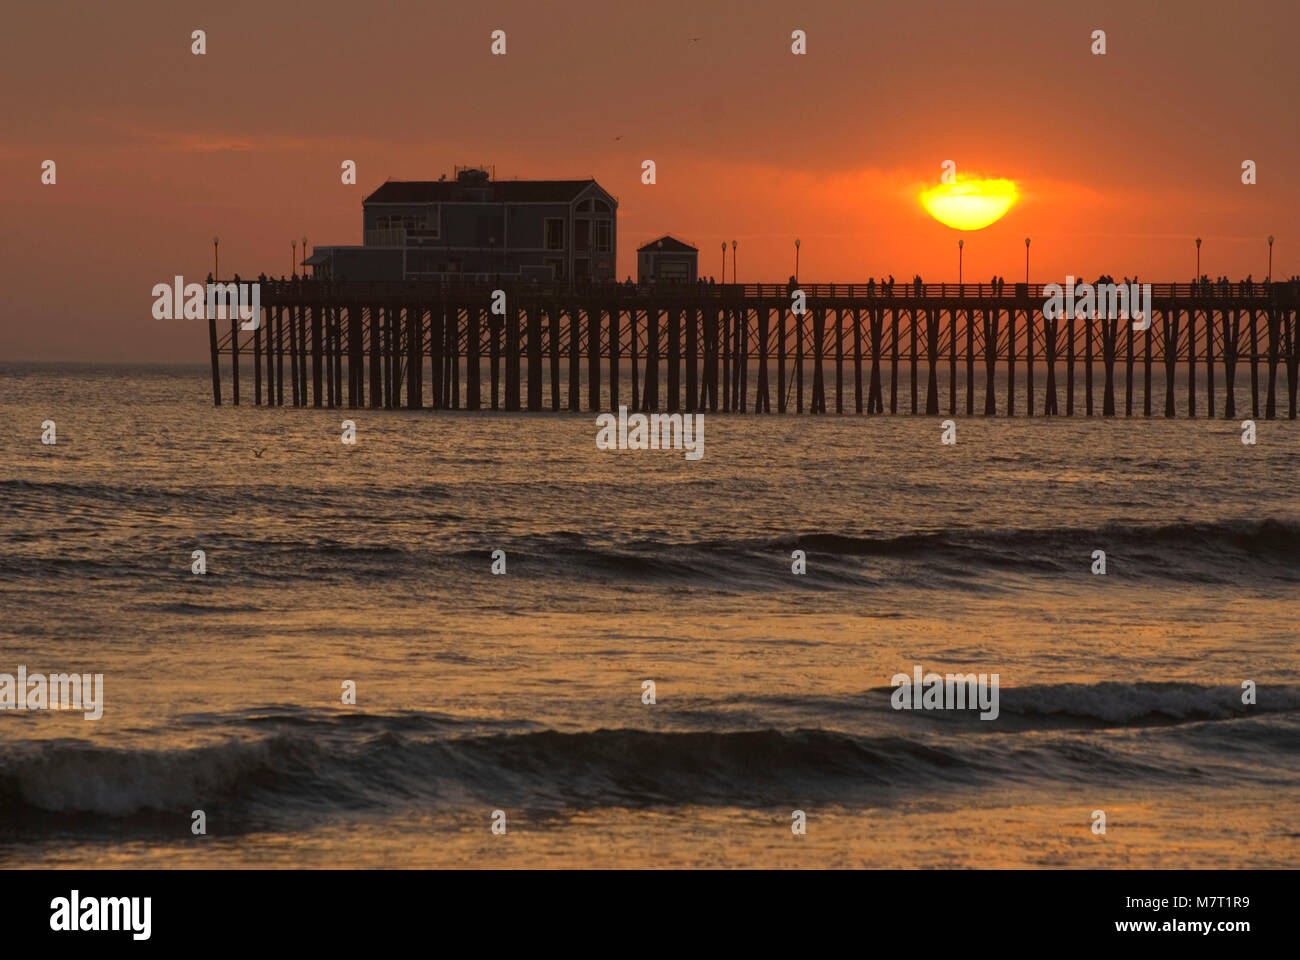 Oceanside Pier sunset, Oceanside, California Stock Photo - Alamy